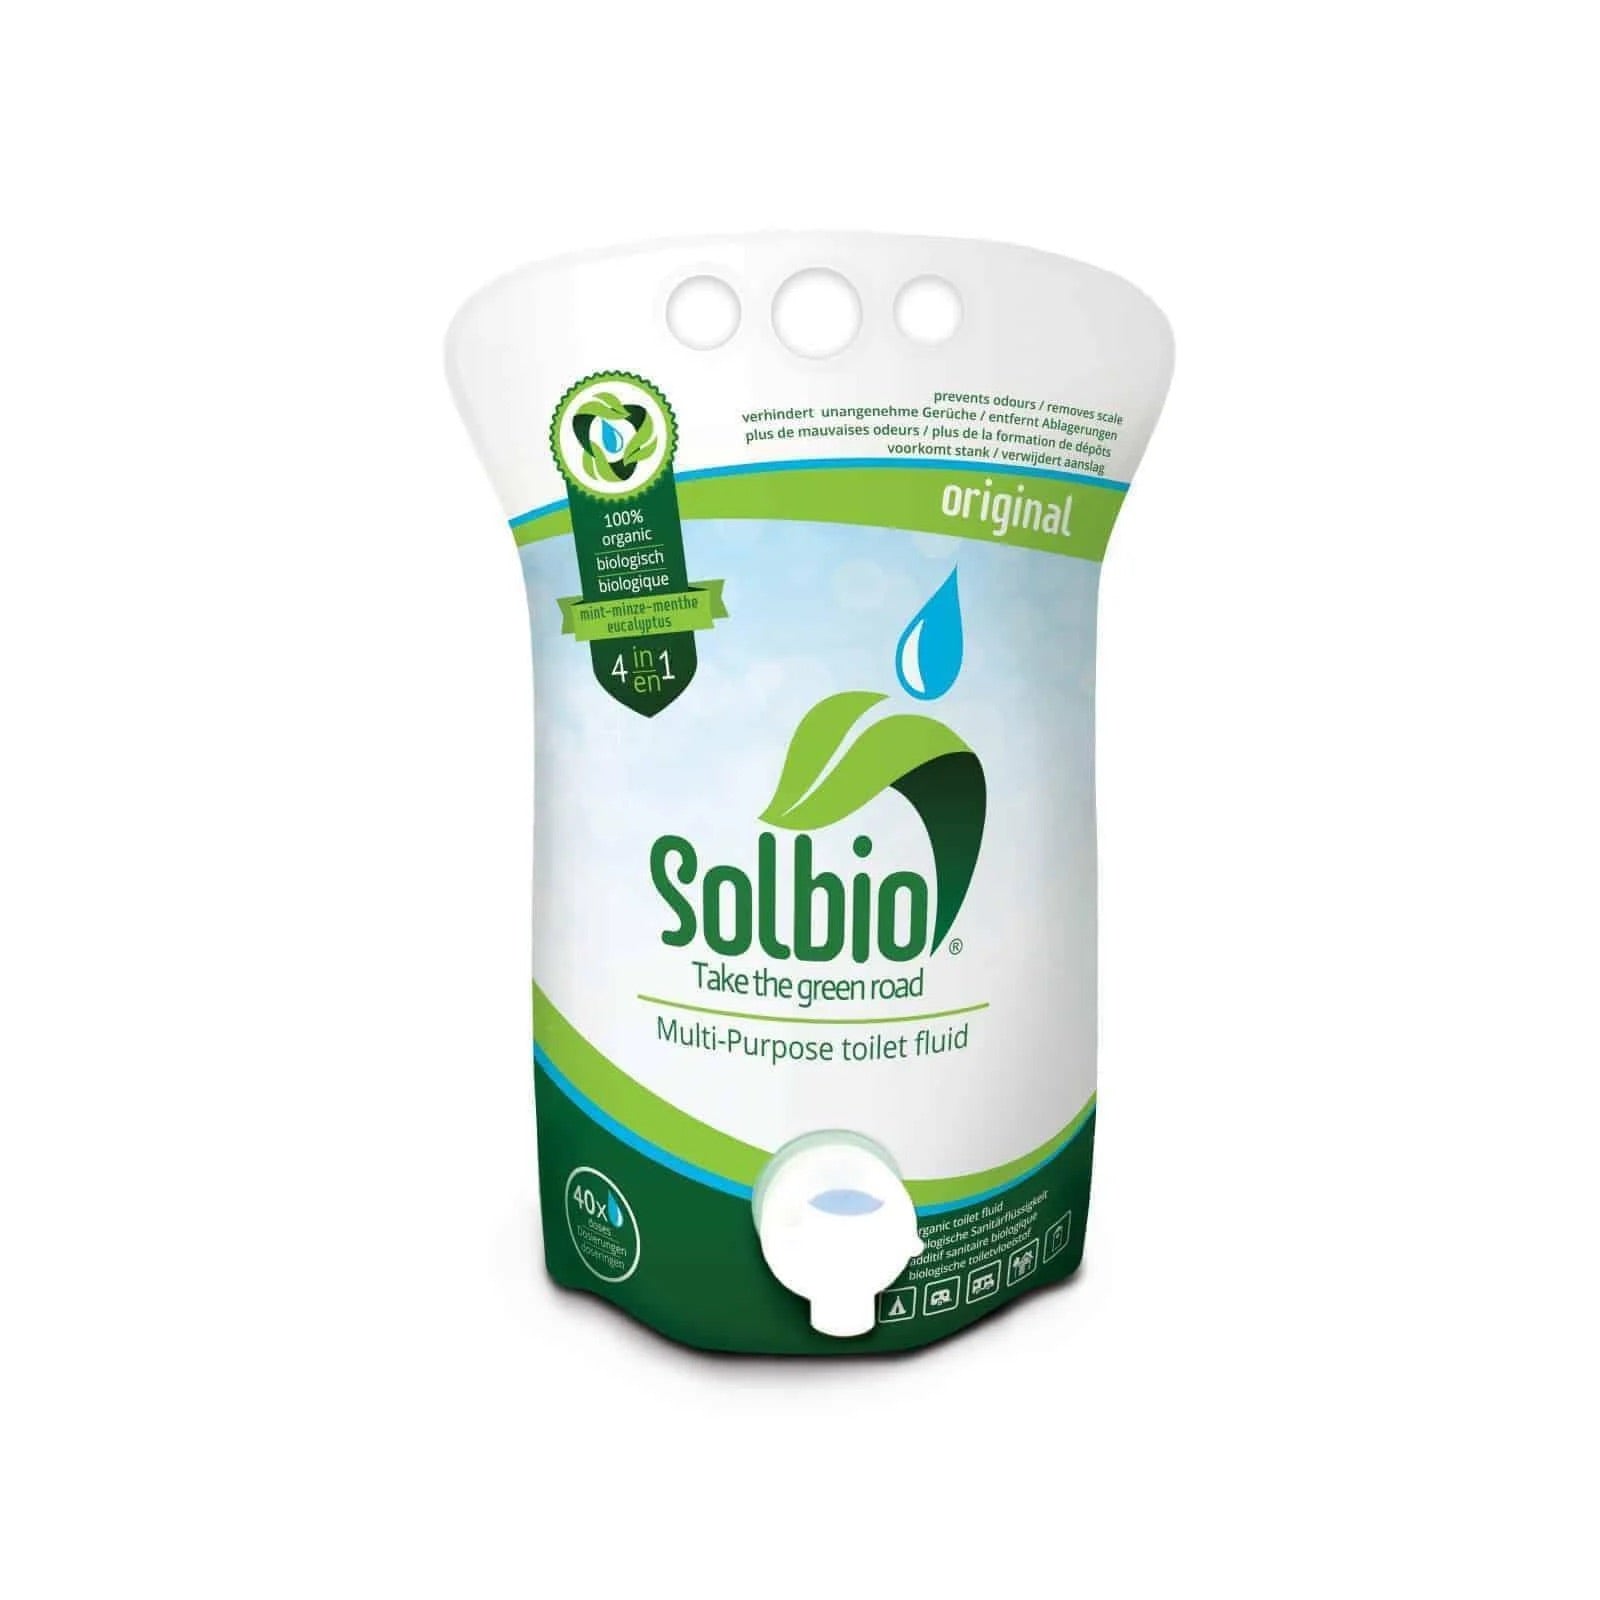 Solbio Original Toilet Liquid